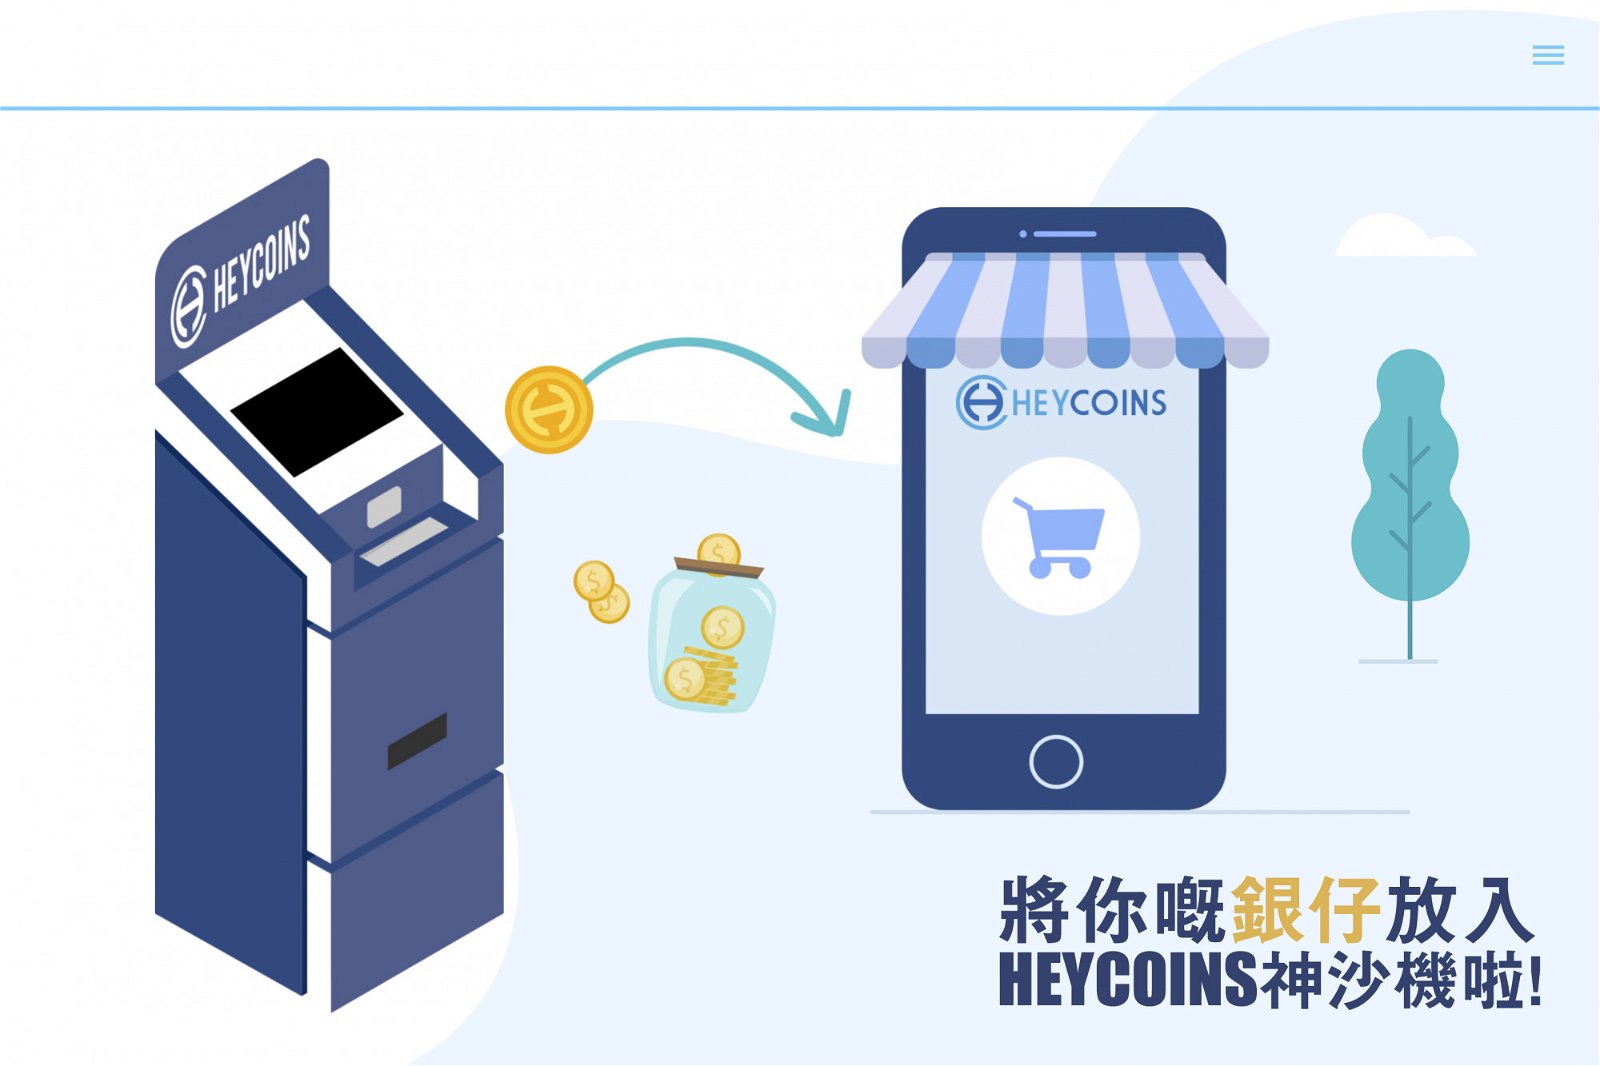 Heycoins是一个协助用户将囤积硬币充值到电子钱包的机器，目前在新加坡、澳门和香港皆能看到它的踪影。